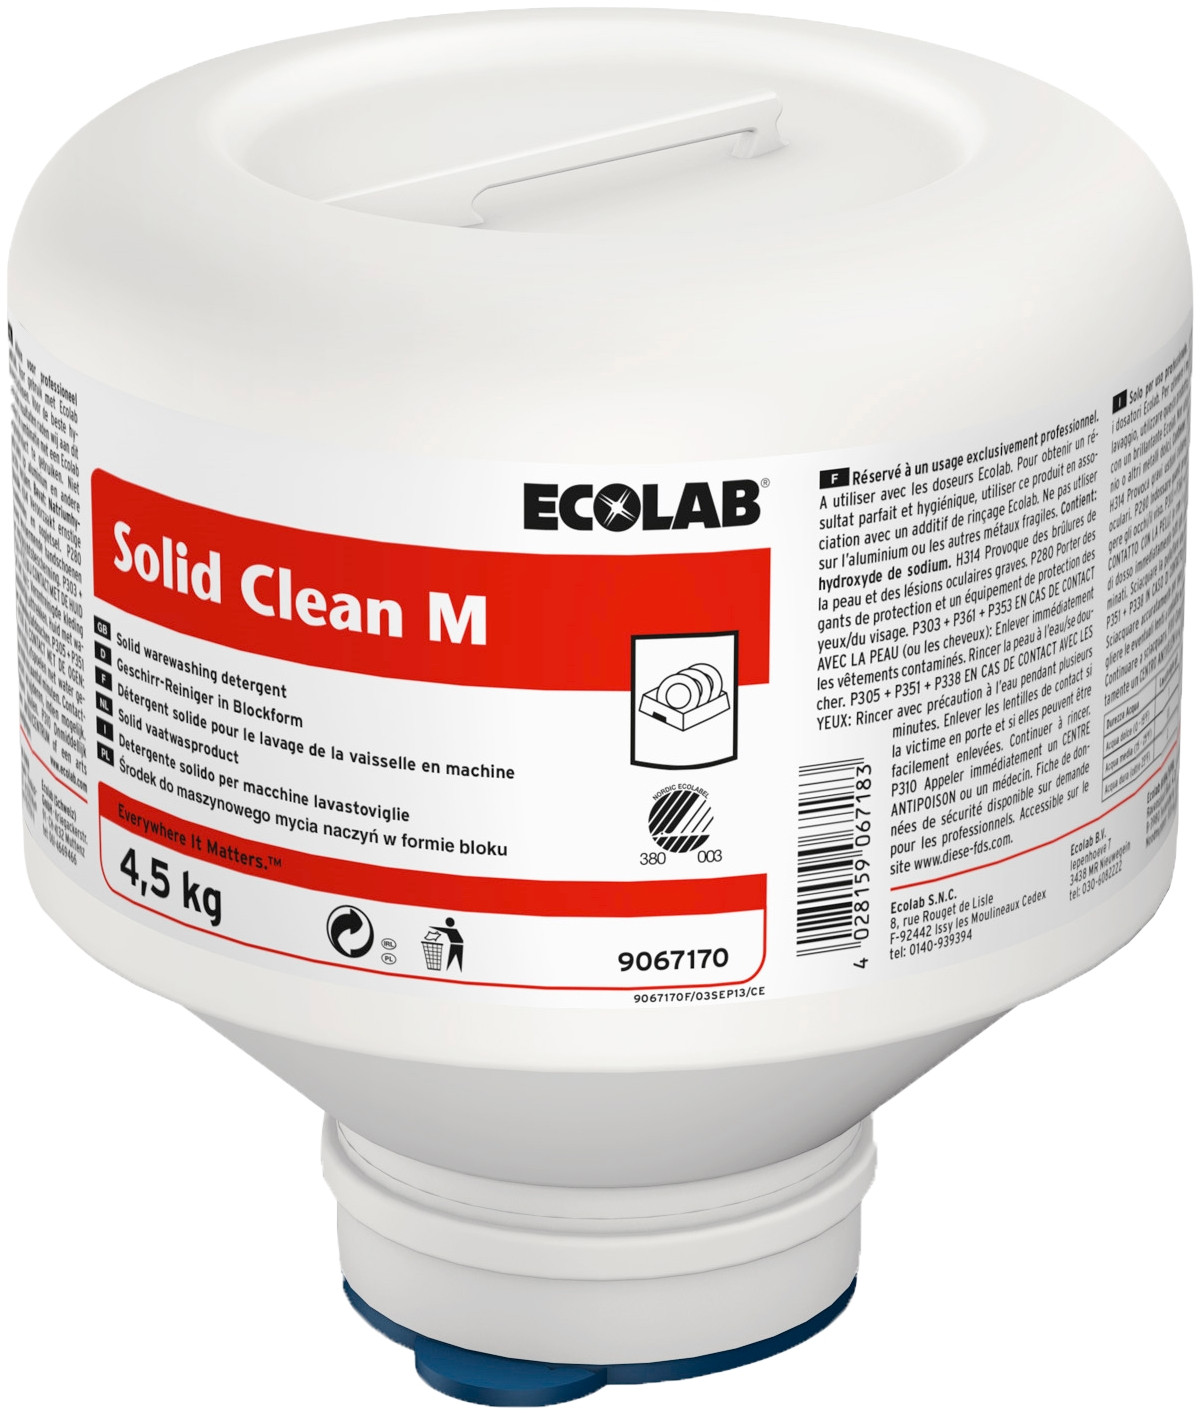 Billede af Ecolab Solid Clean M Maskinopvask 4x4,5 kg Uden klor (9067190)